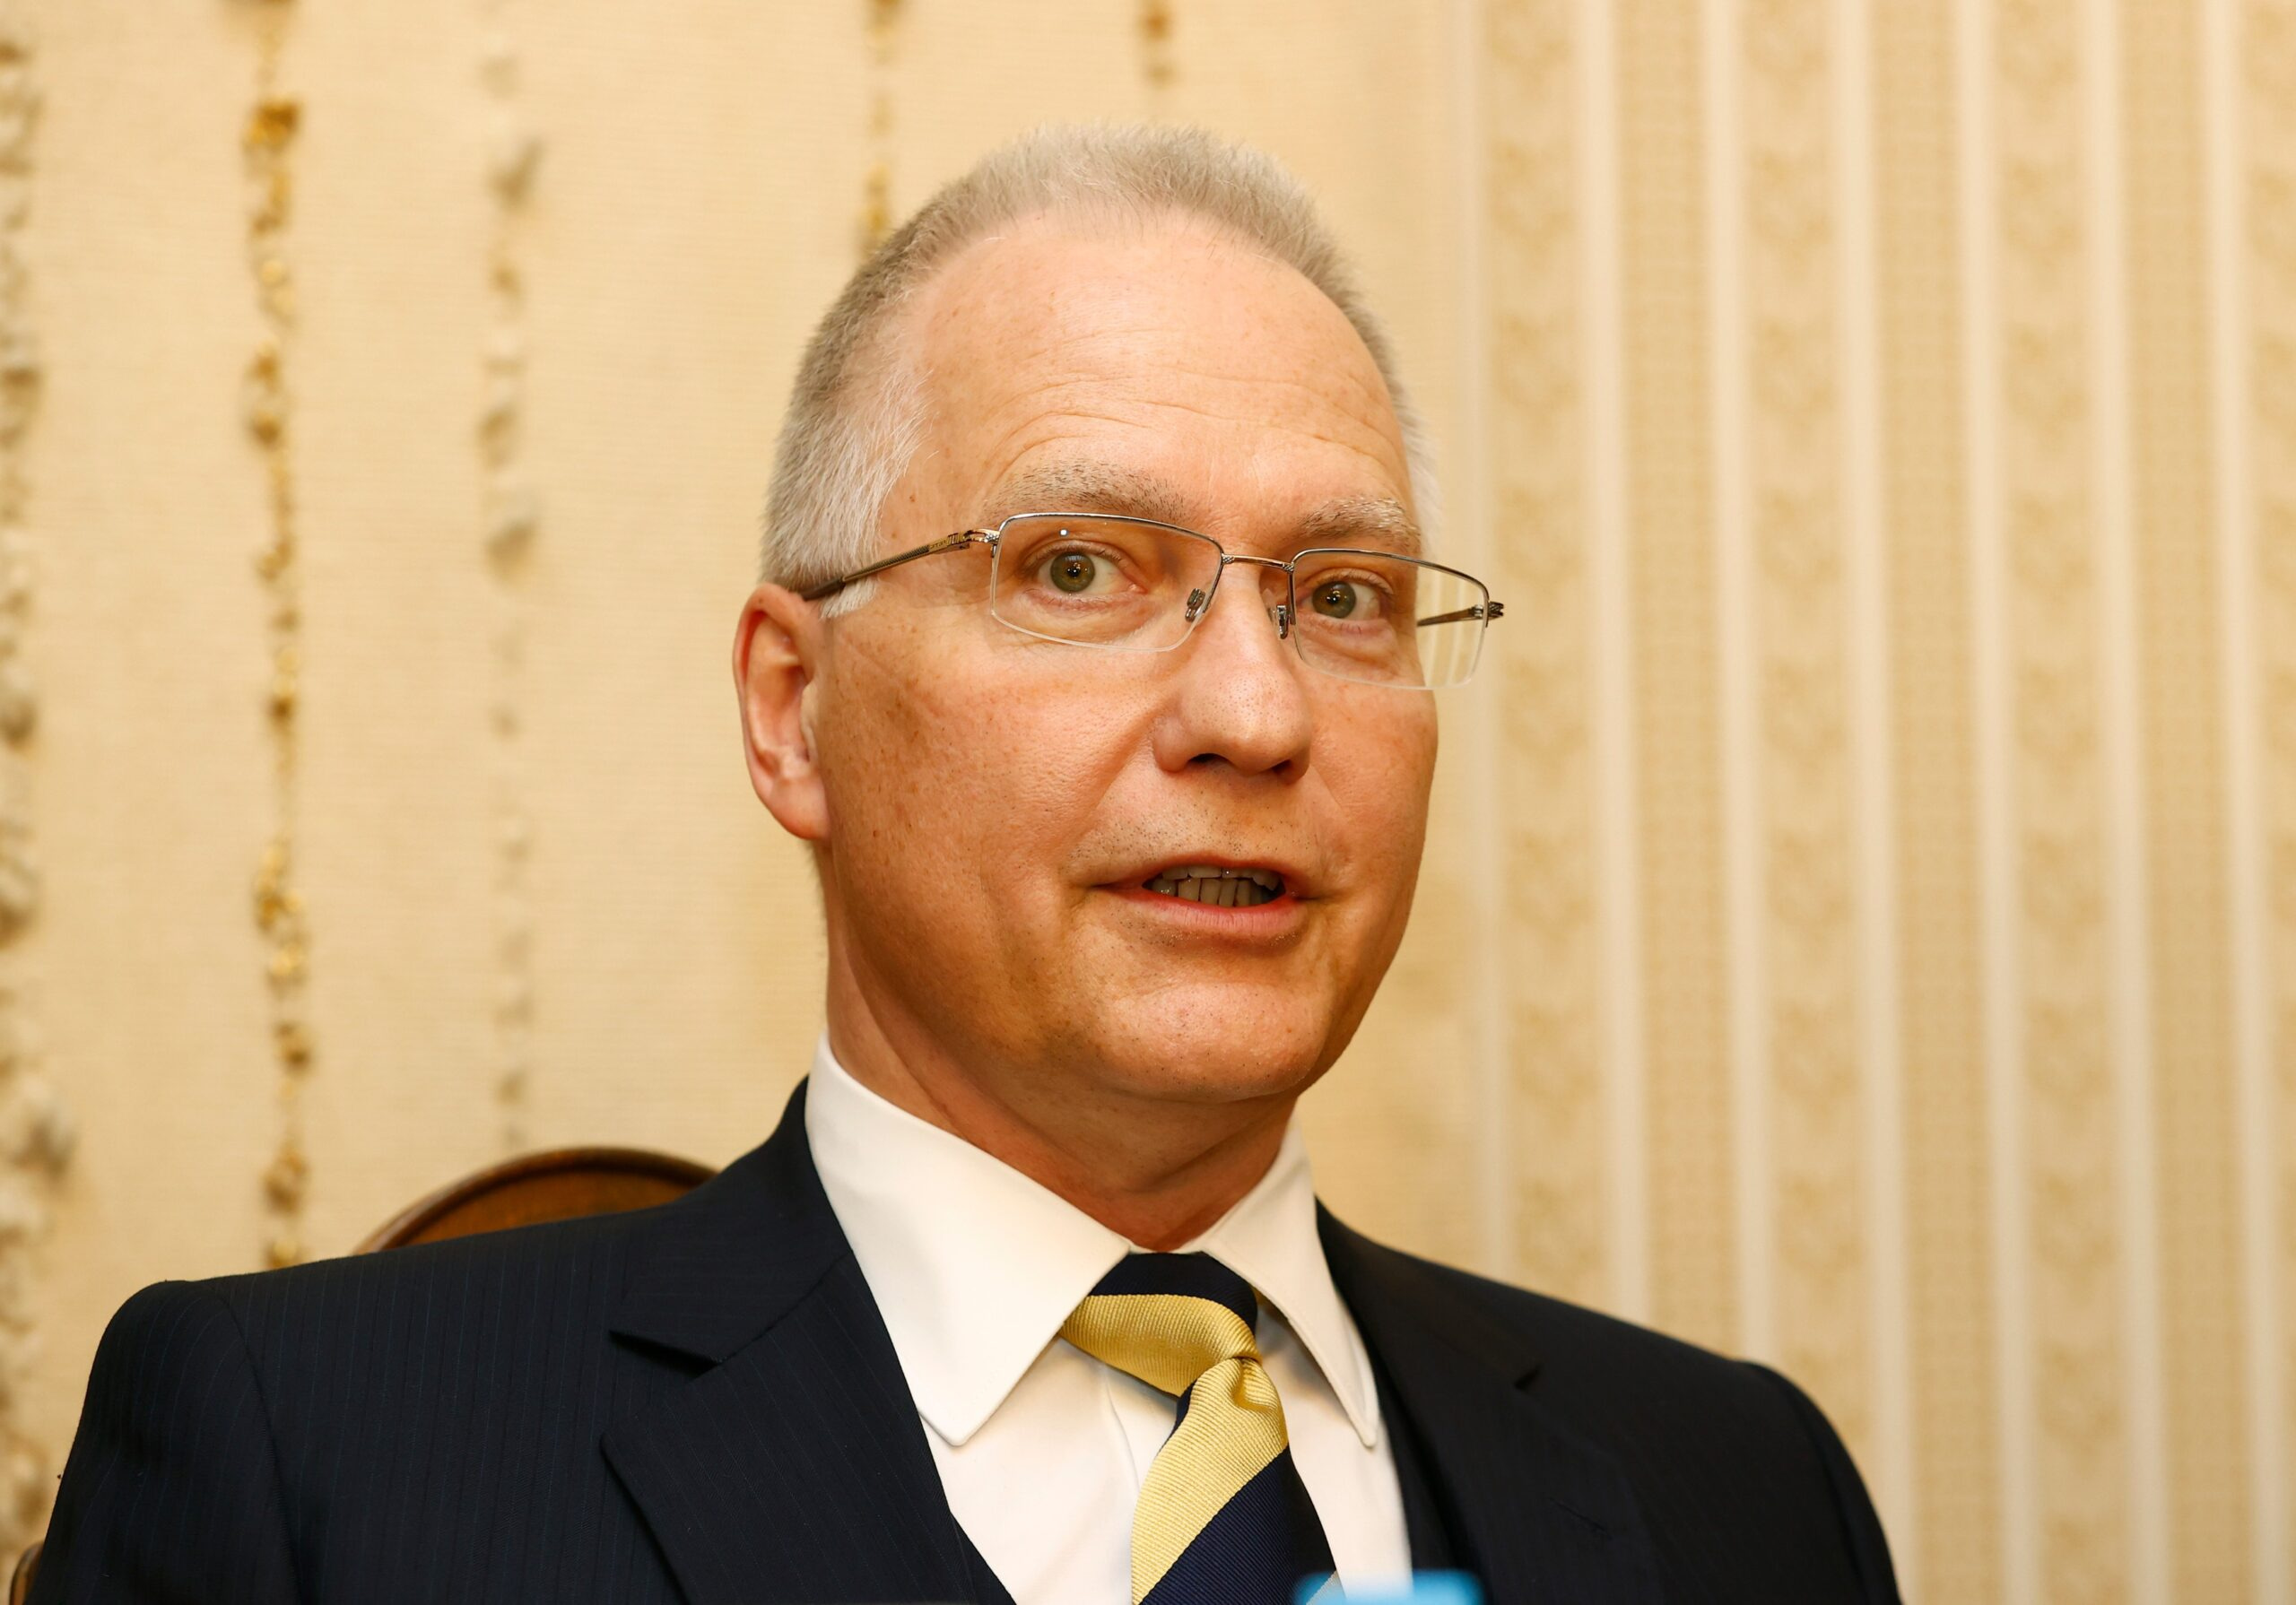 Michal Koudelka, ředitel Bezpečnostní informační služby